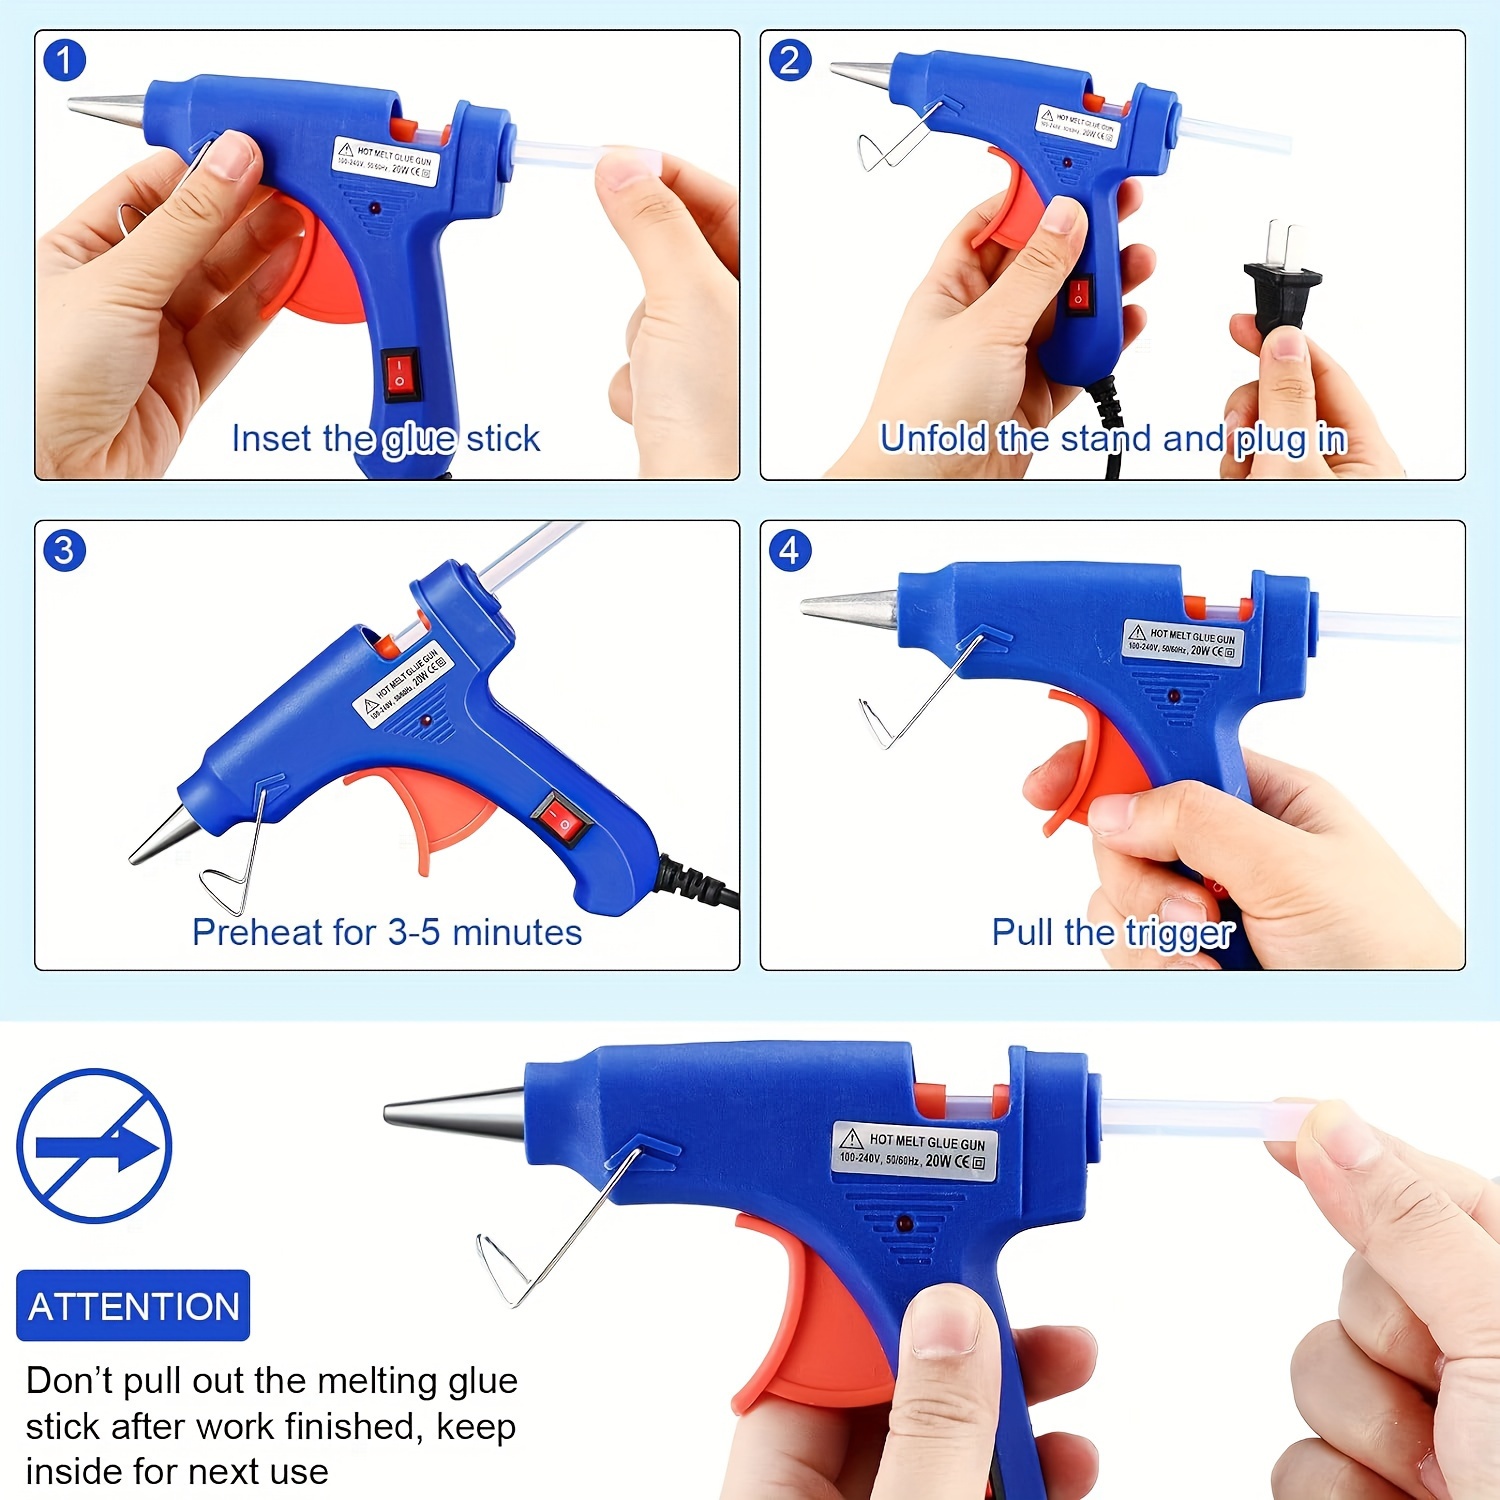  Hot Glue Gun Kit, Mini Hot Melt Glue Gun for Crafts with 30  Glue Sticks and Carry Case, Hot Mini Glue Guns for Craft, School DIY Arts,  and Home Repair 